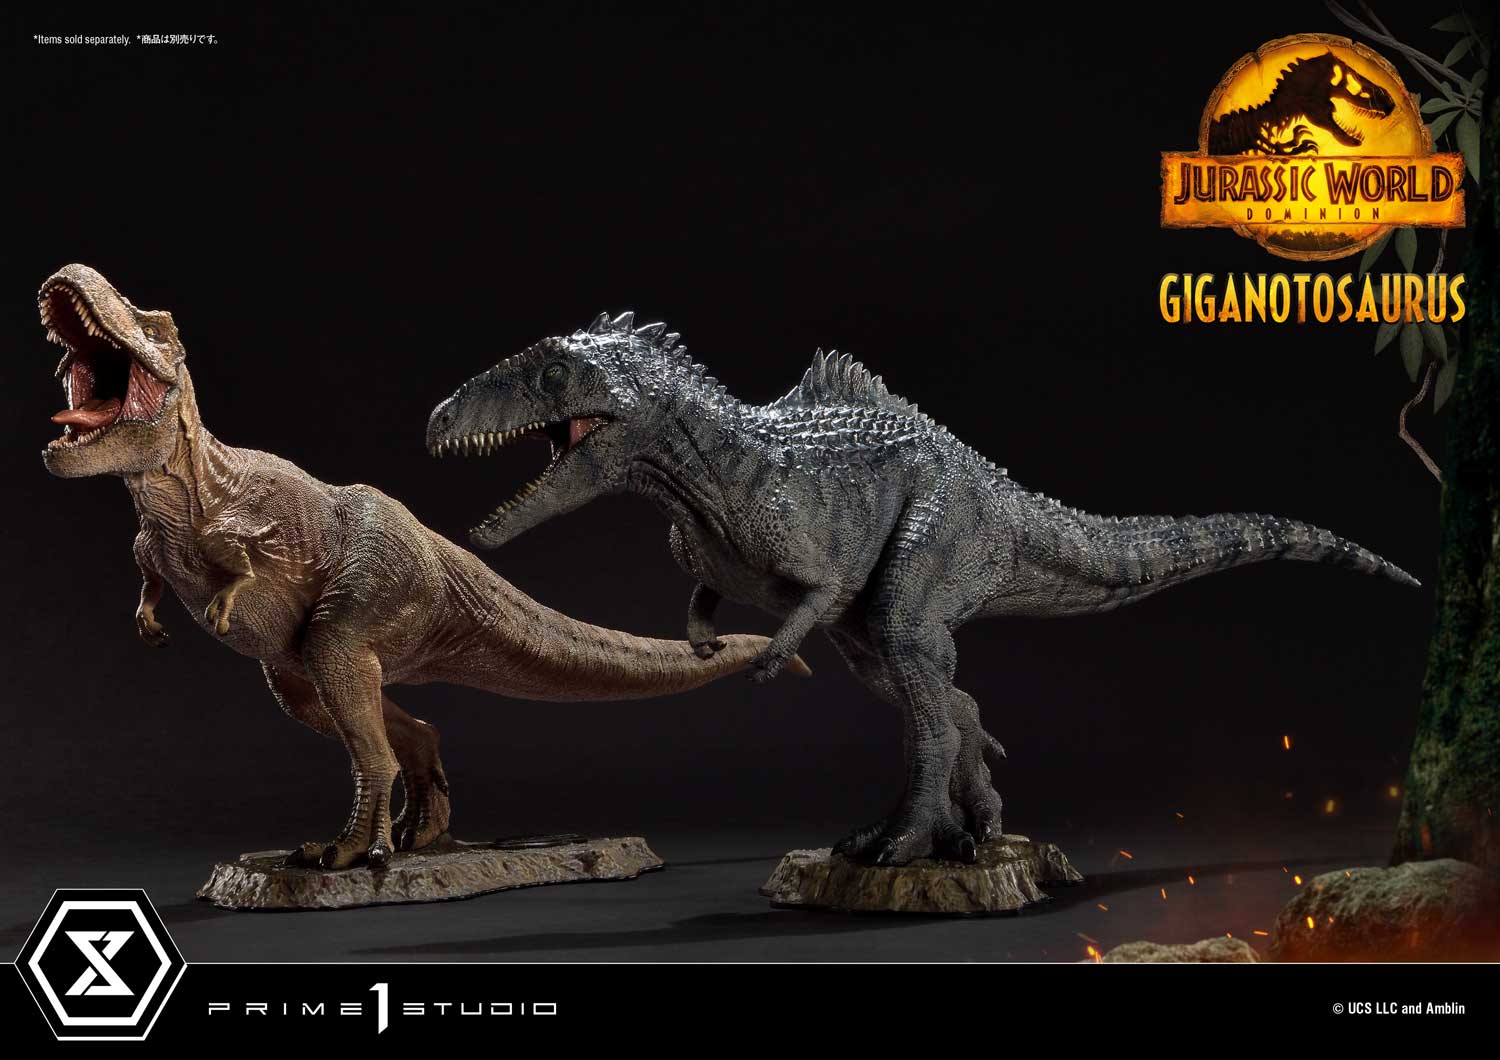 プライムコレクタブルフィギュア ジュラシック・ワールド：新たなる支配者 ギガノトサウルス